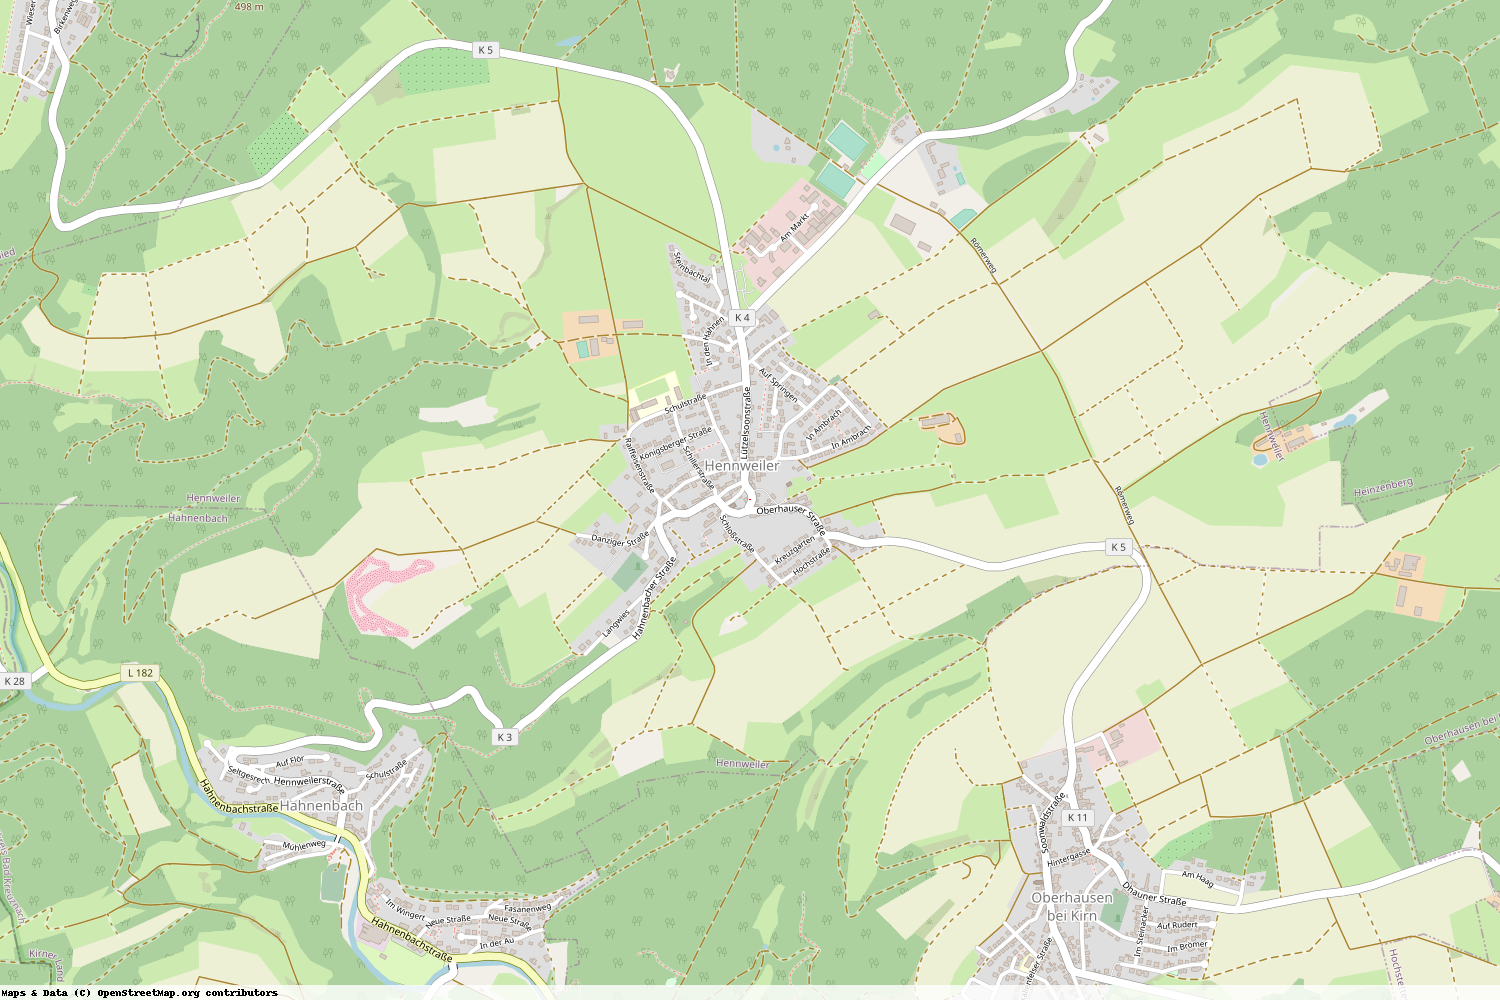 Ist gerade Stromausfall in Rheinland-Pfalz - Bad Kreuznach - Hennweiler?